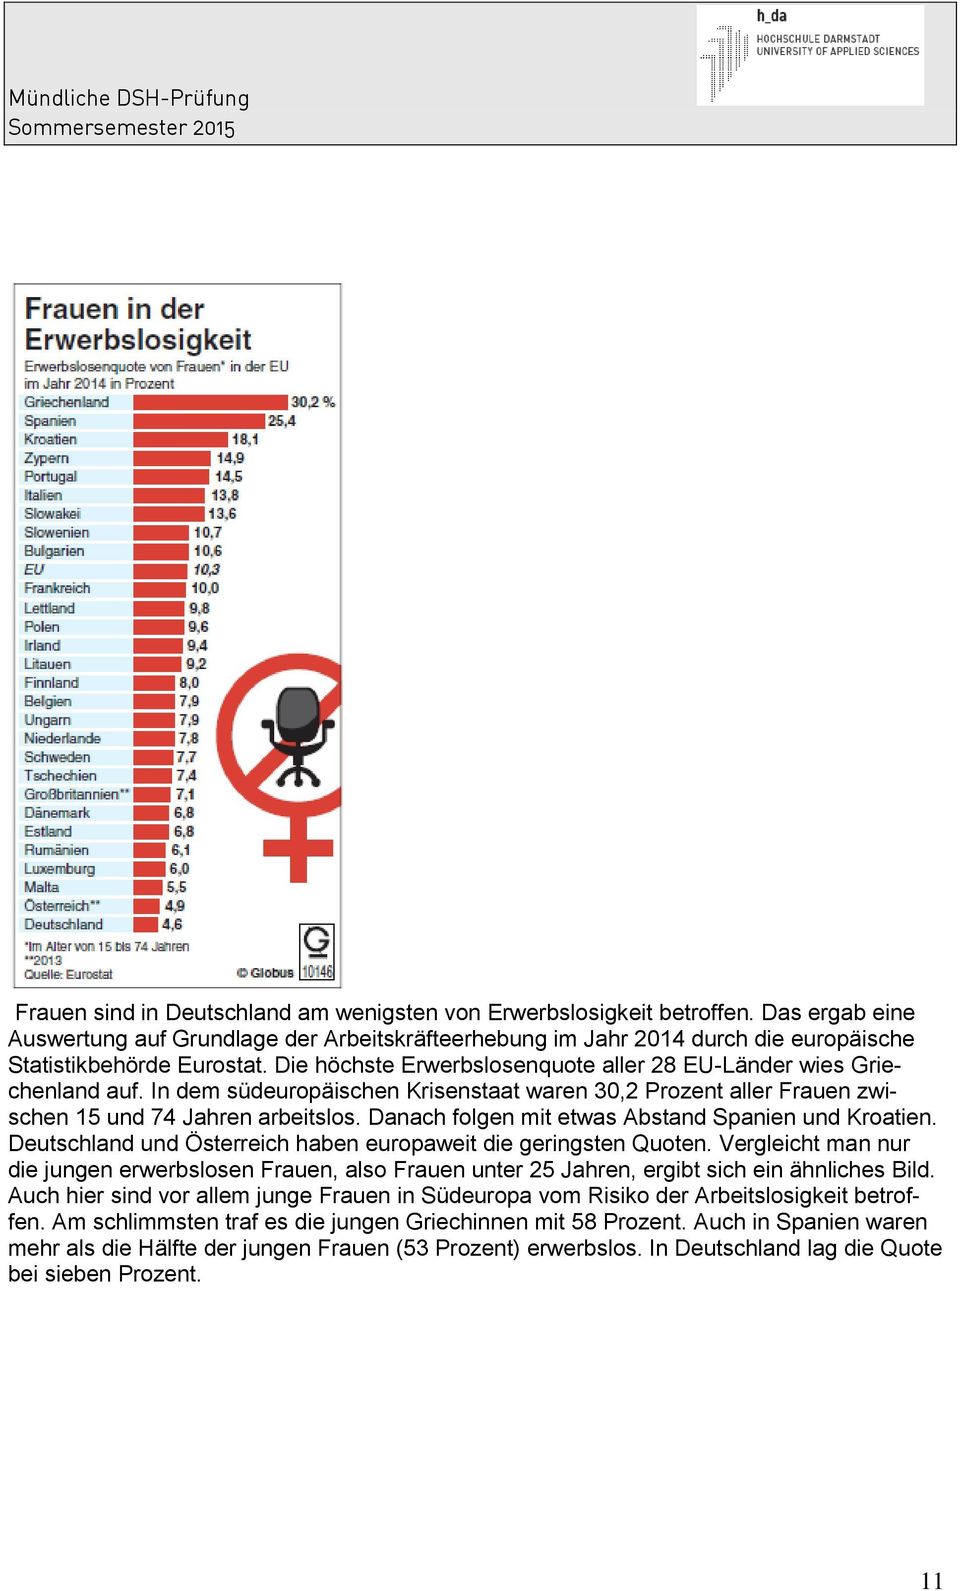 Danach folgen mit etwas Abstand Spanien und Kroatien. Deutschland und Österreich haben europaweit die geringsten Quoten.